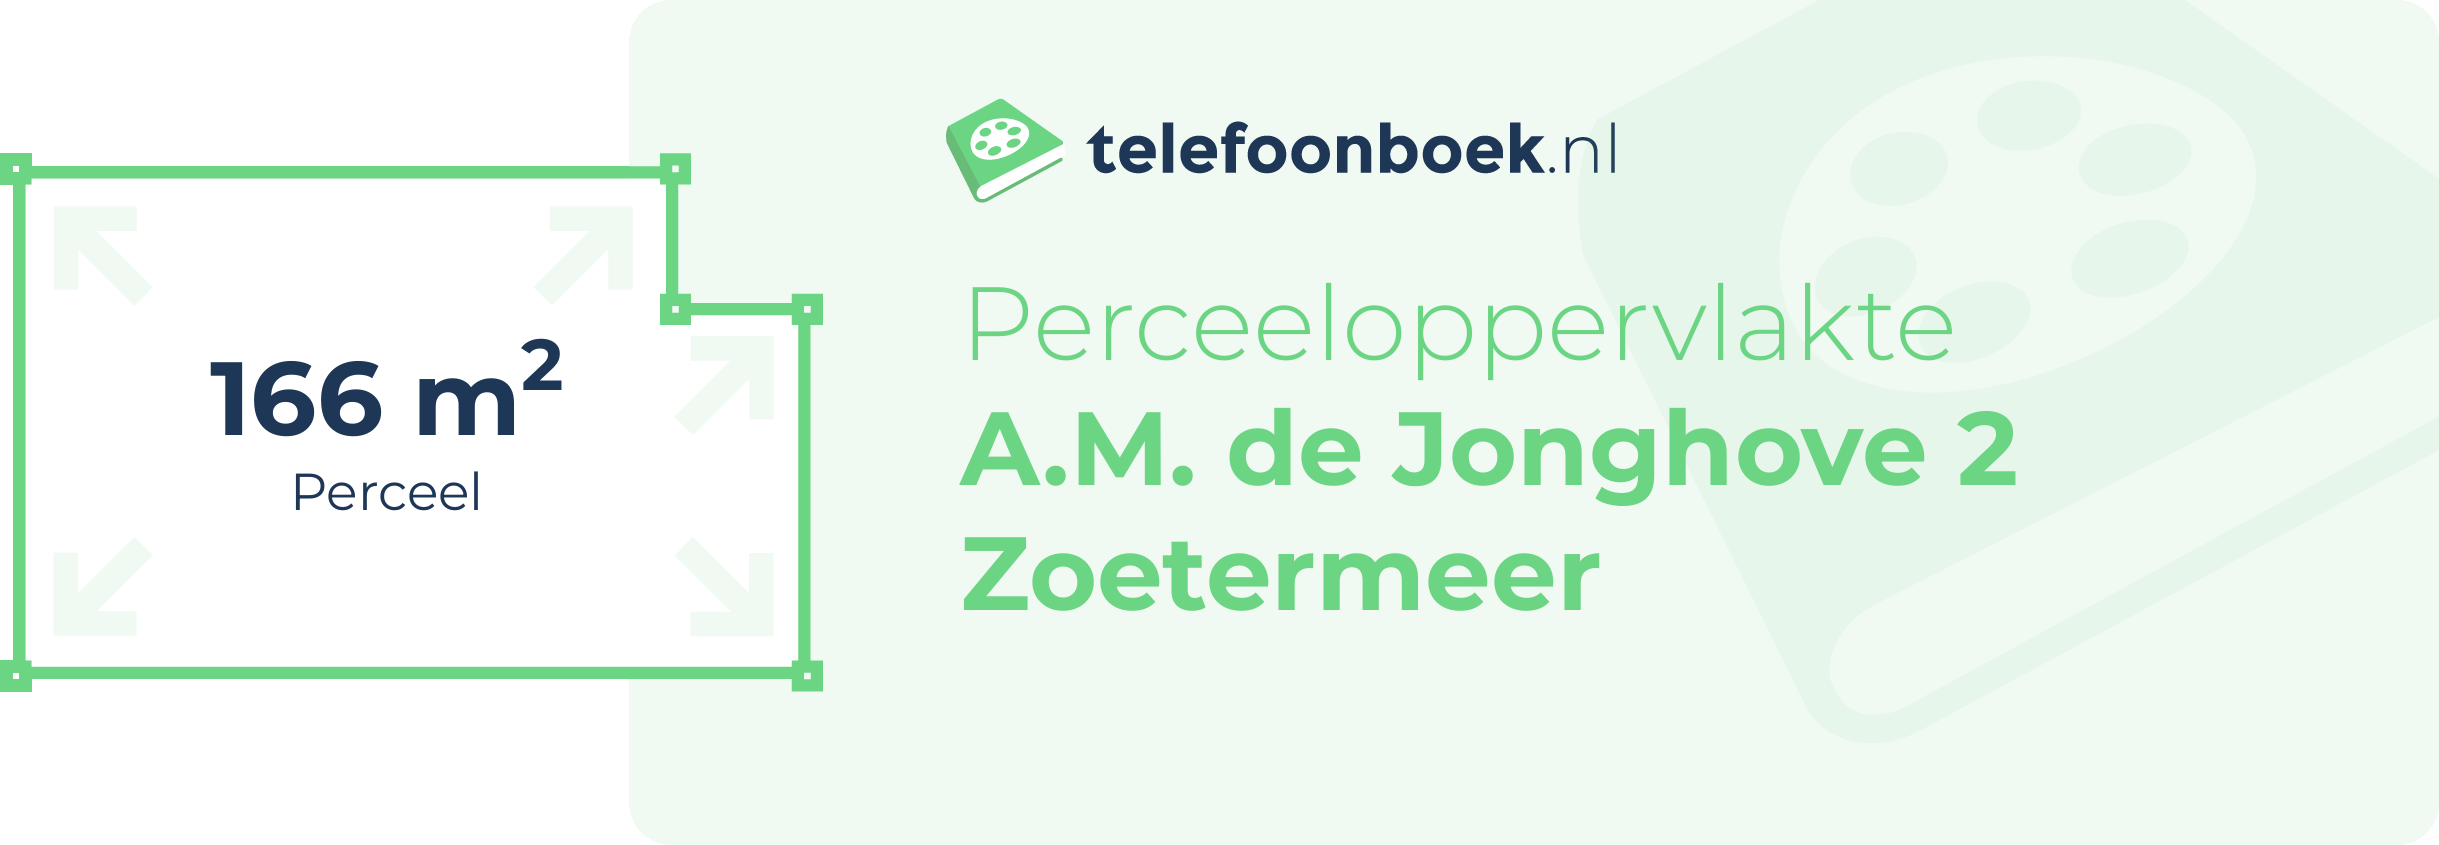 Perceeloppervlakte A.M. De Jonghove 2 Zoetermeer